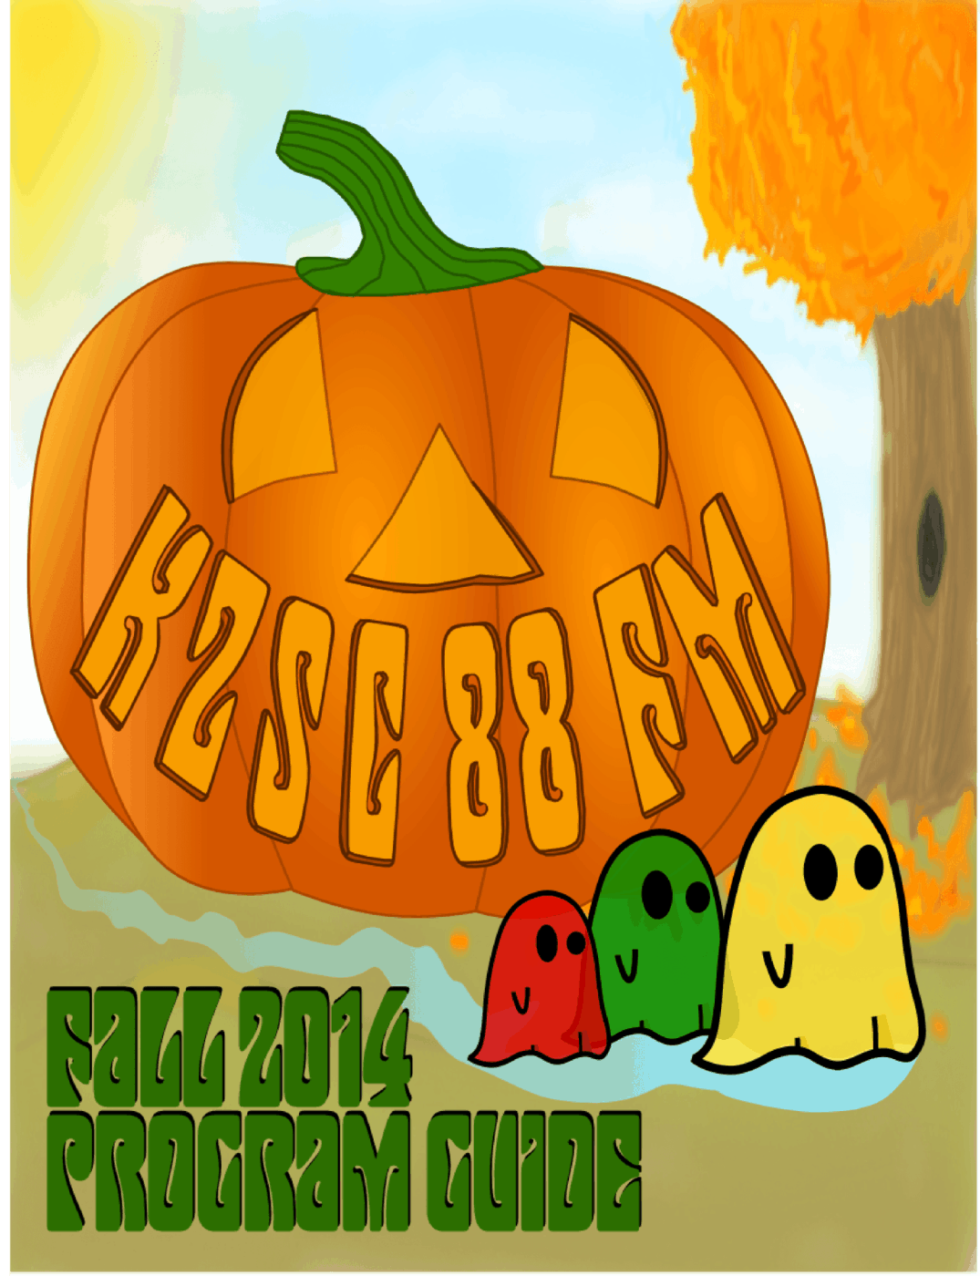 Fall 2014 Program Guide Cover Art